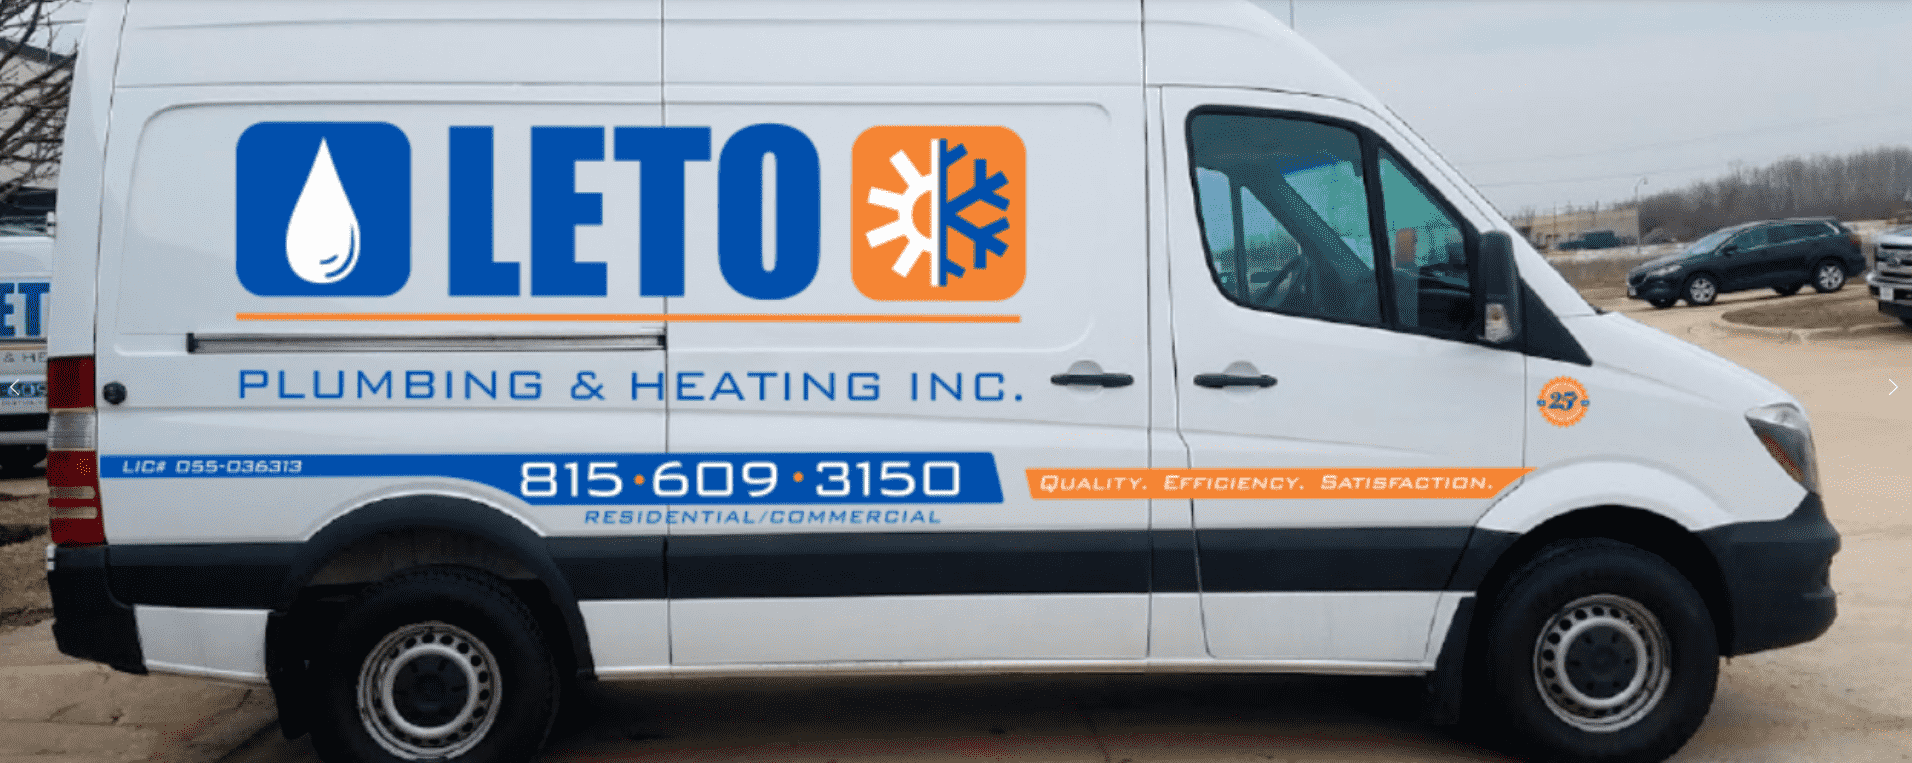 Leto Plumbing & Heating, Inc. branded Van